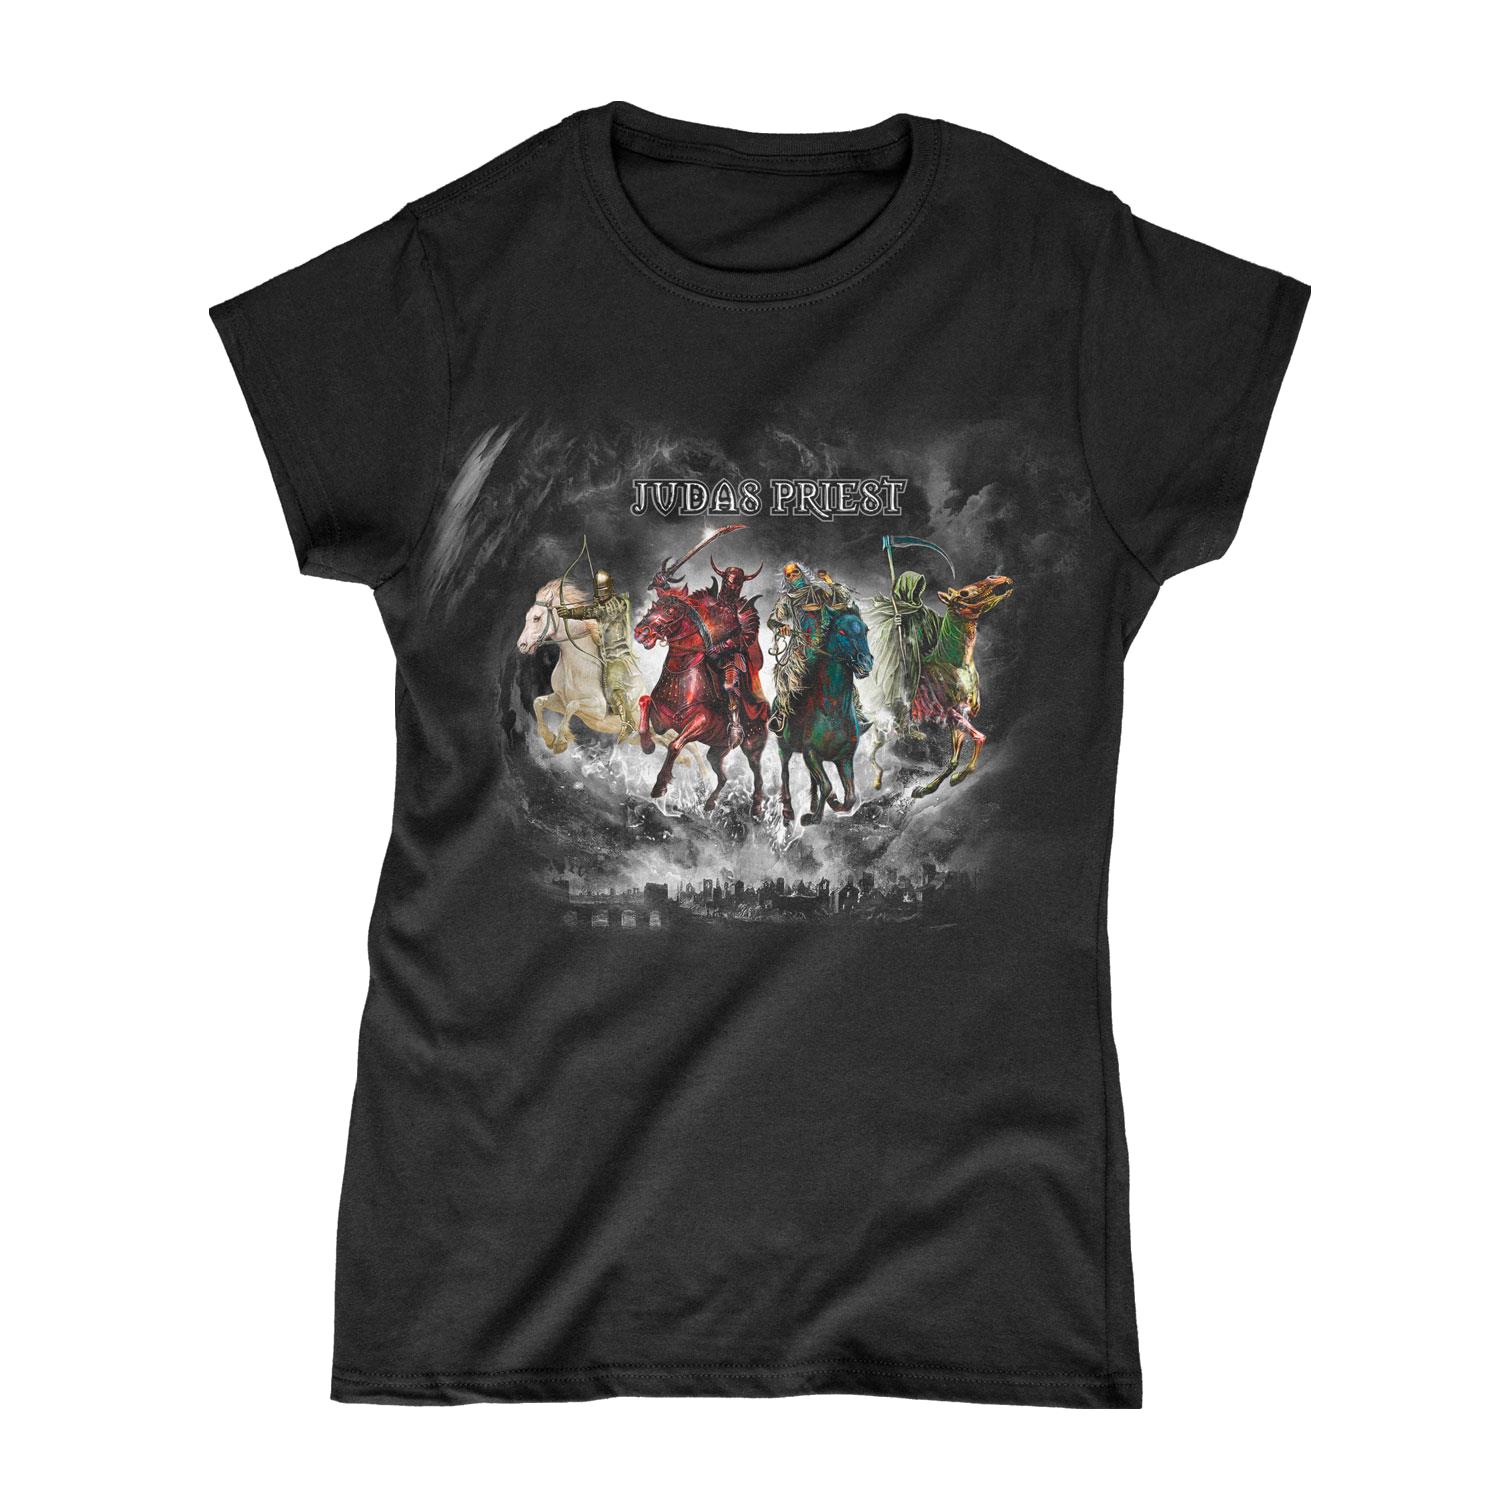 Judas Priest - Four Horsemen Womens T-Shirt